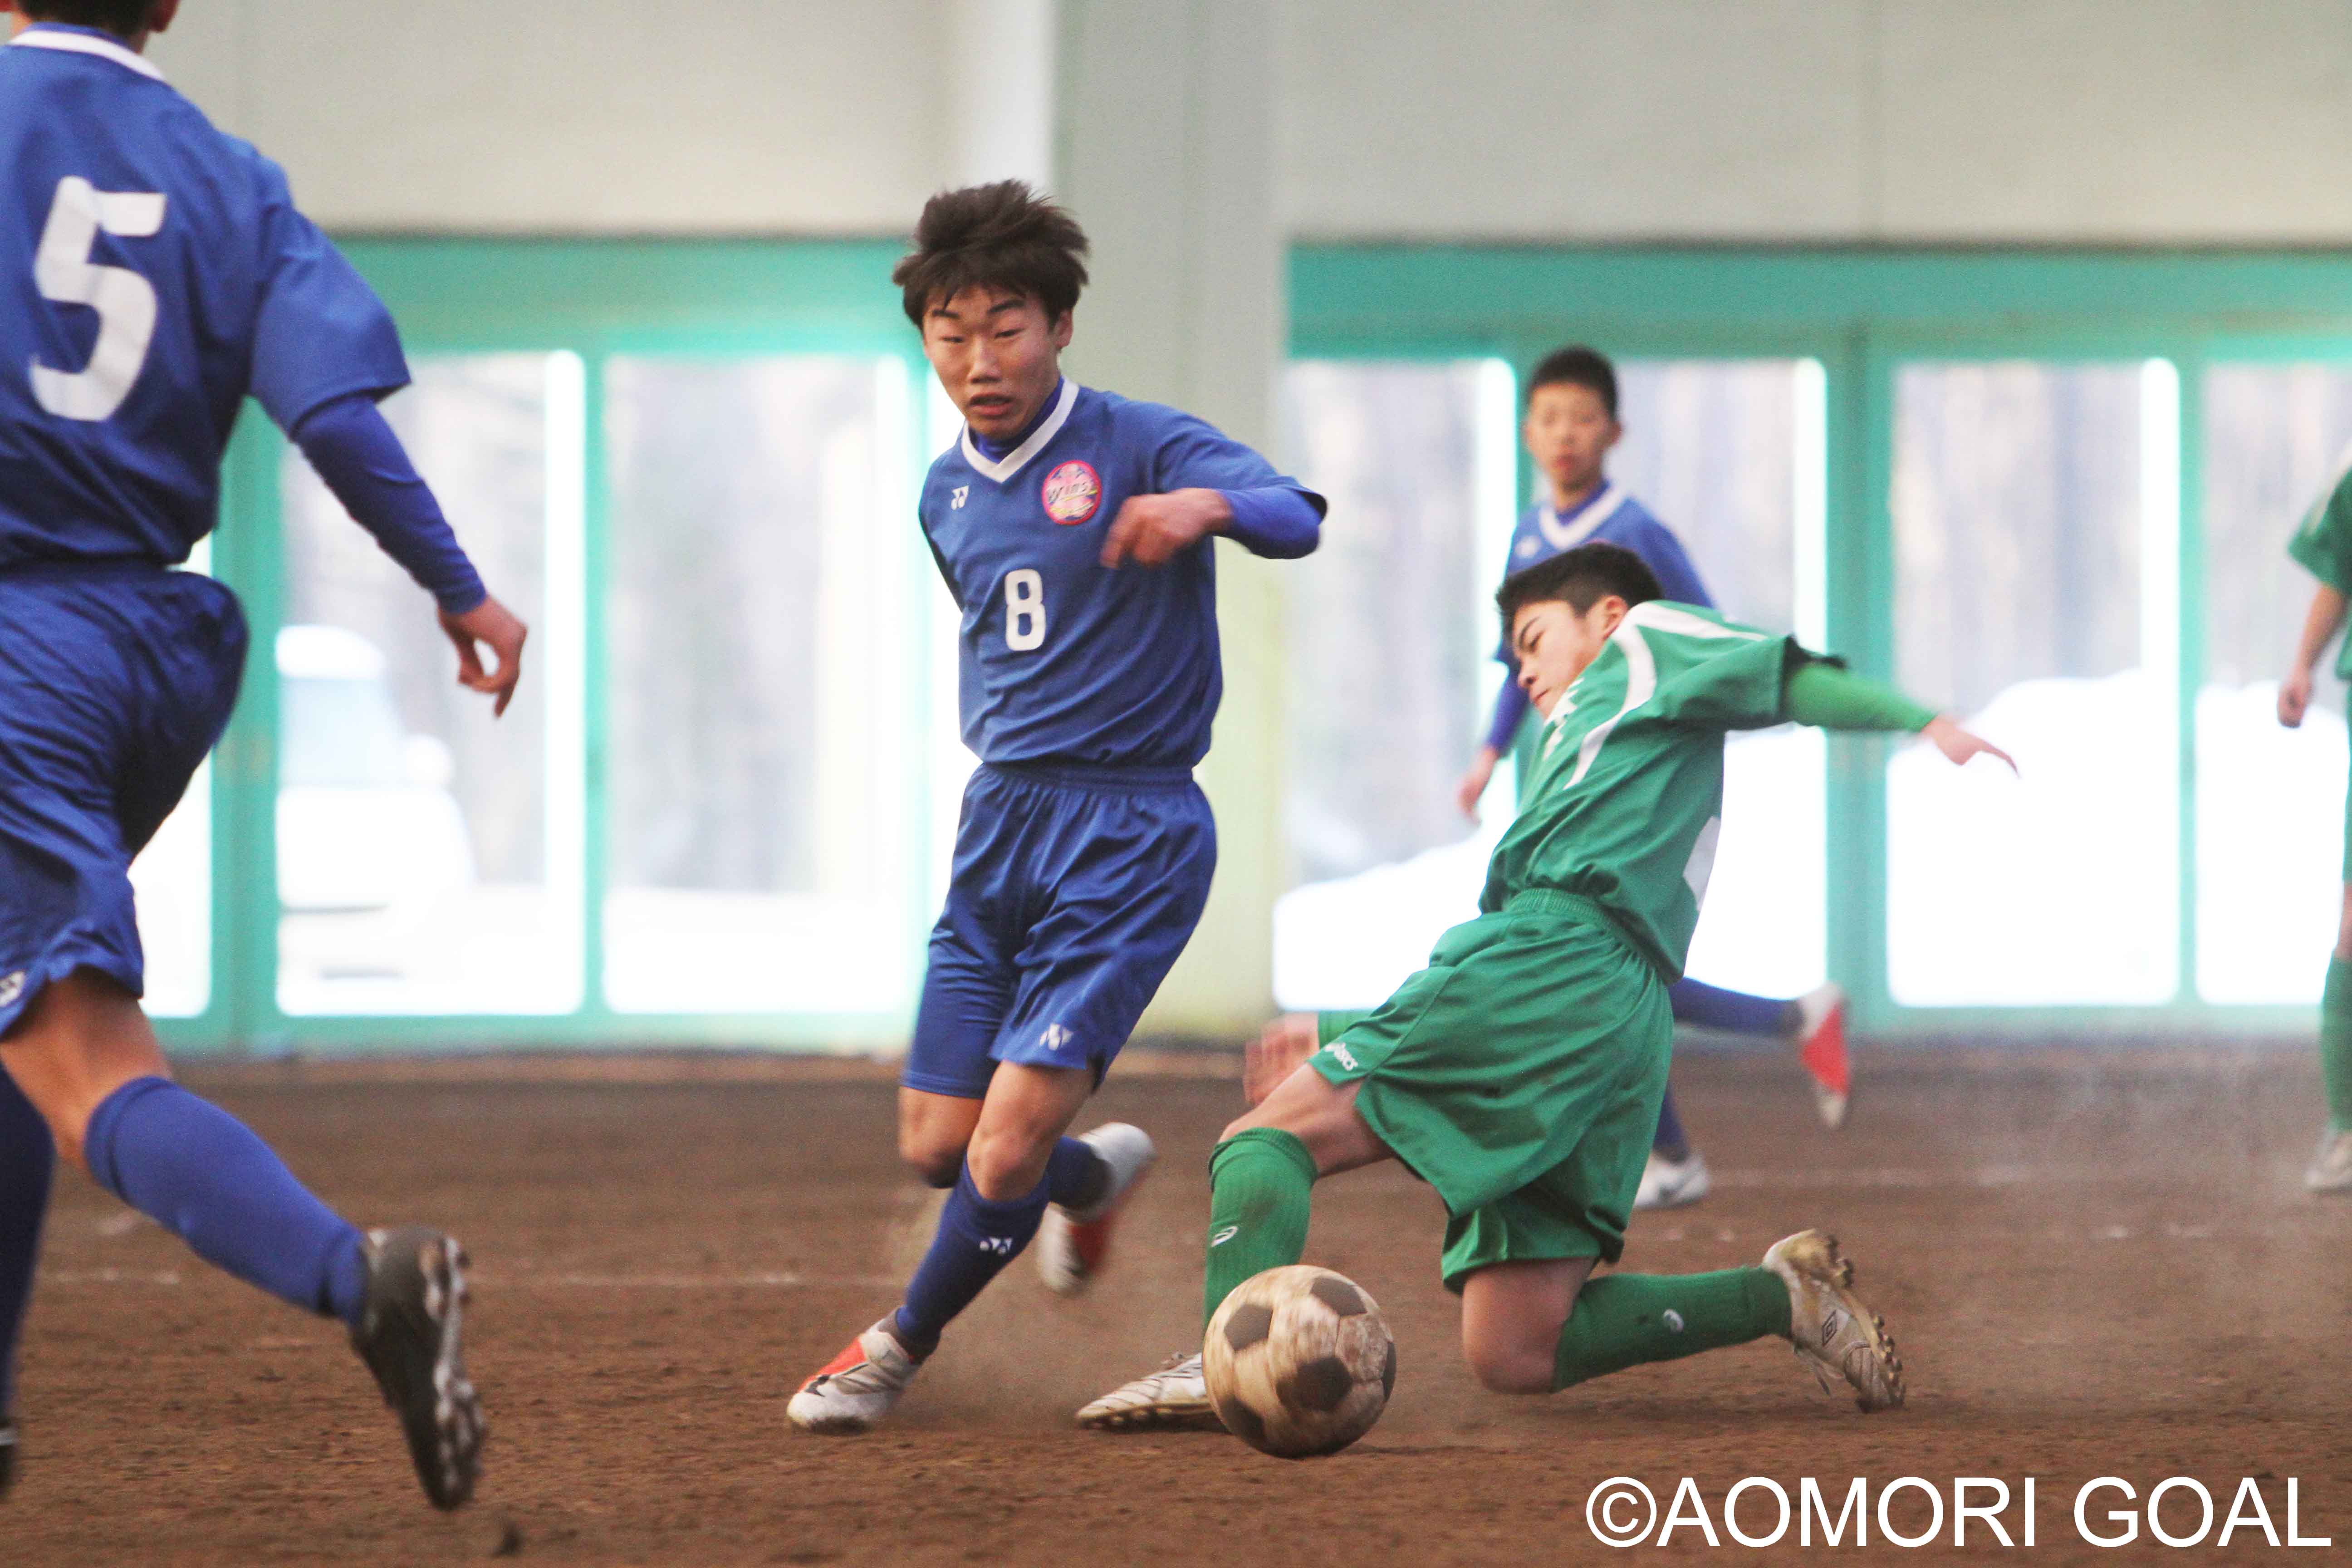 第16回 U 14ウインズカップサッカー大会 結果 3種 中学生 大会情報 青森ゴール Aomori Goal 青森県サッカー フットサルマガジン